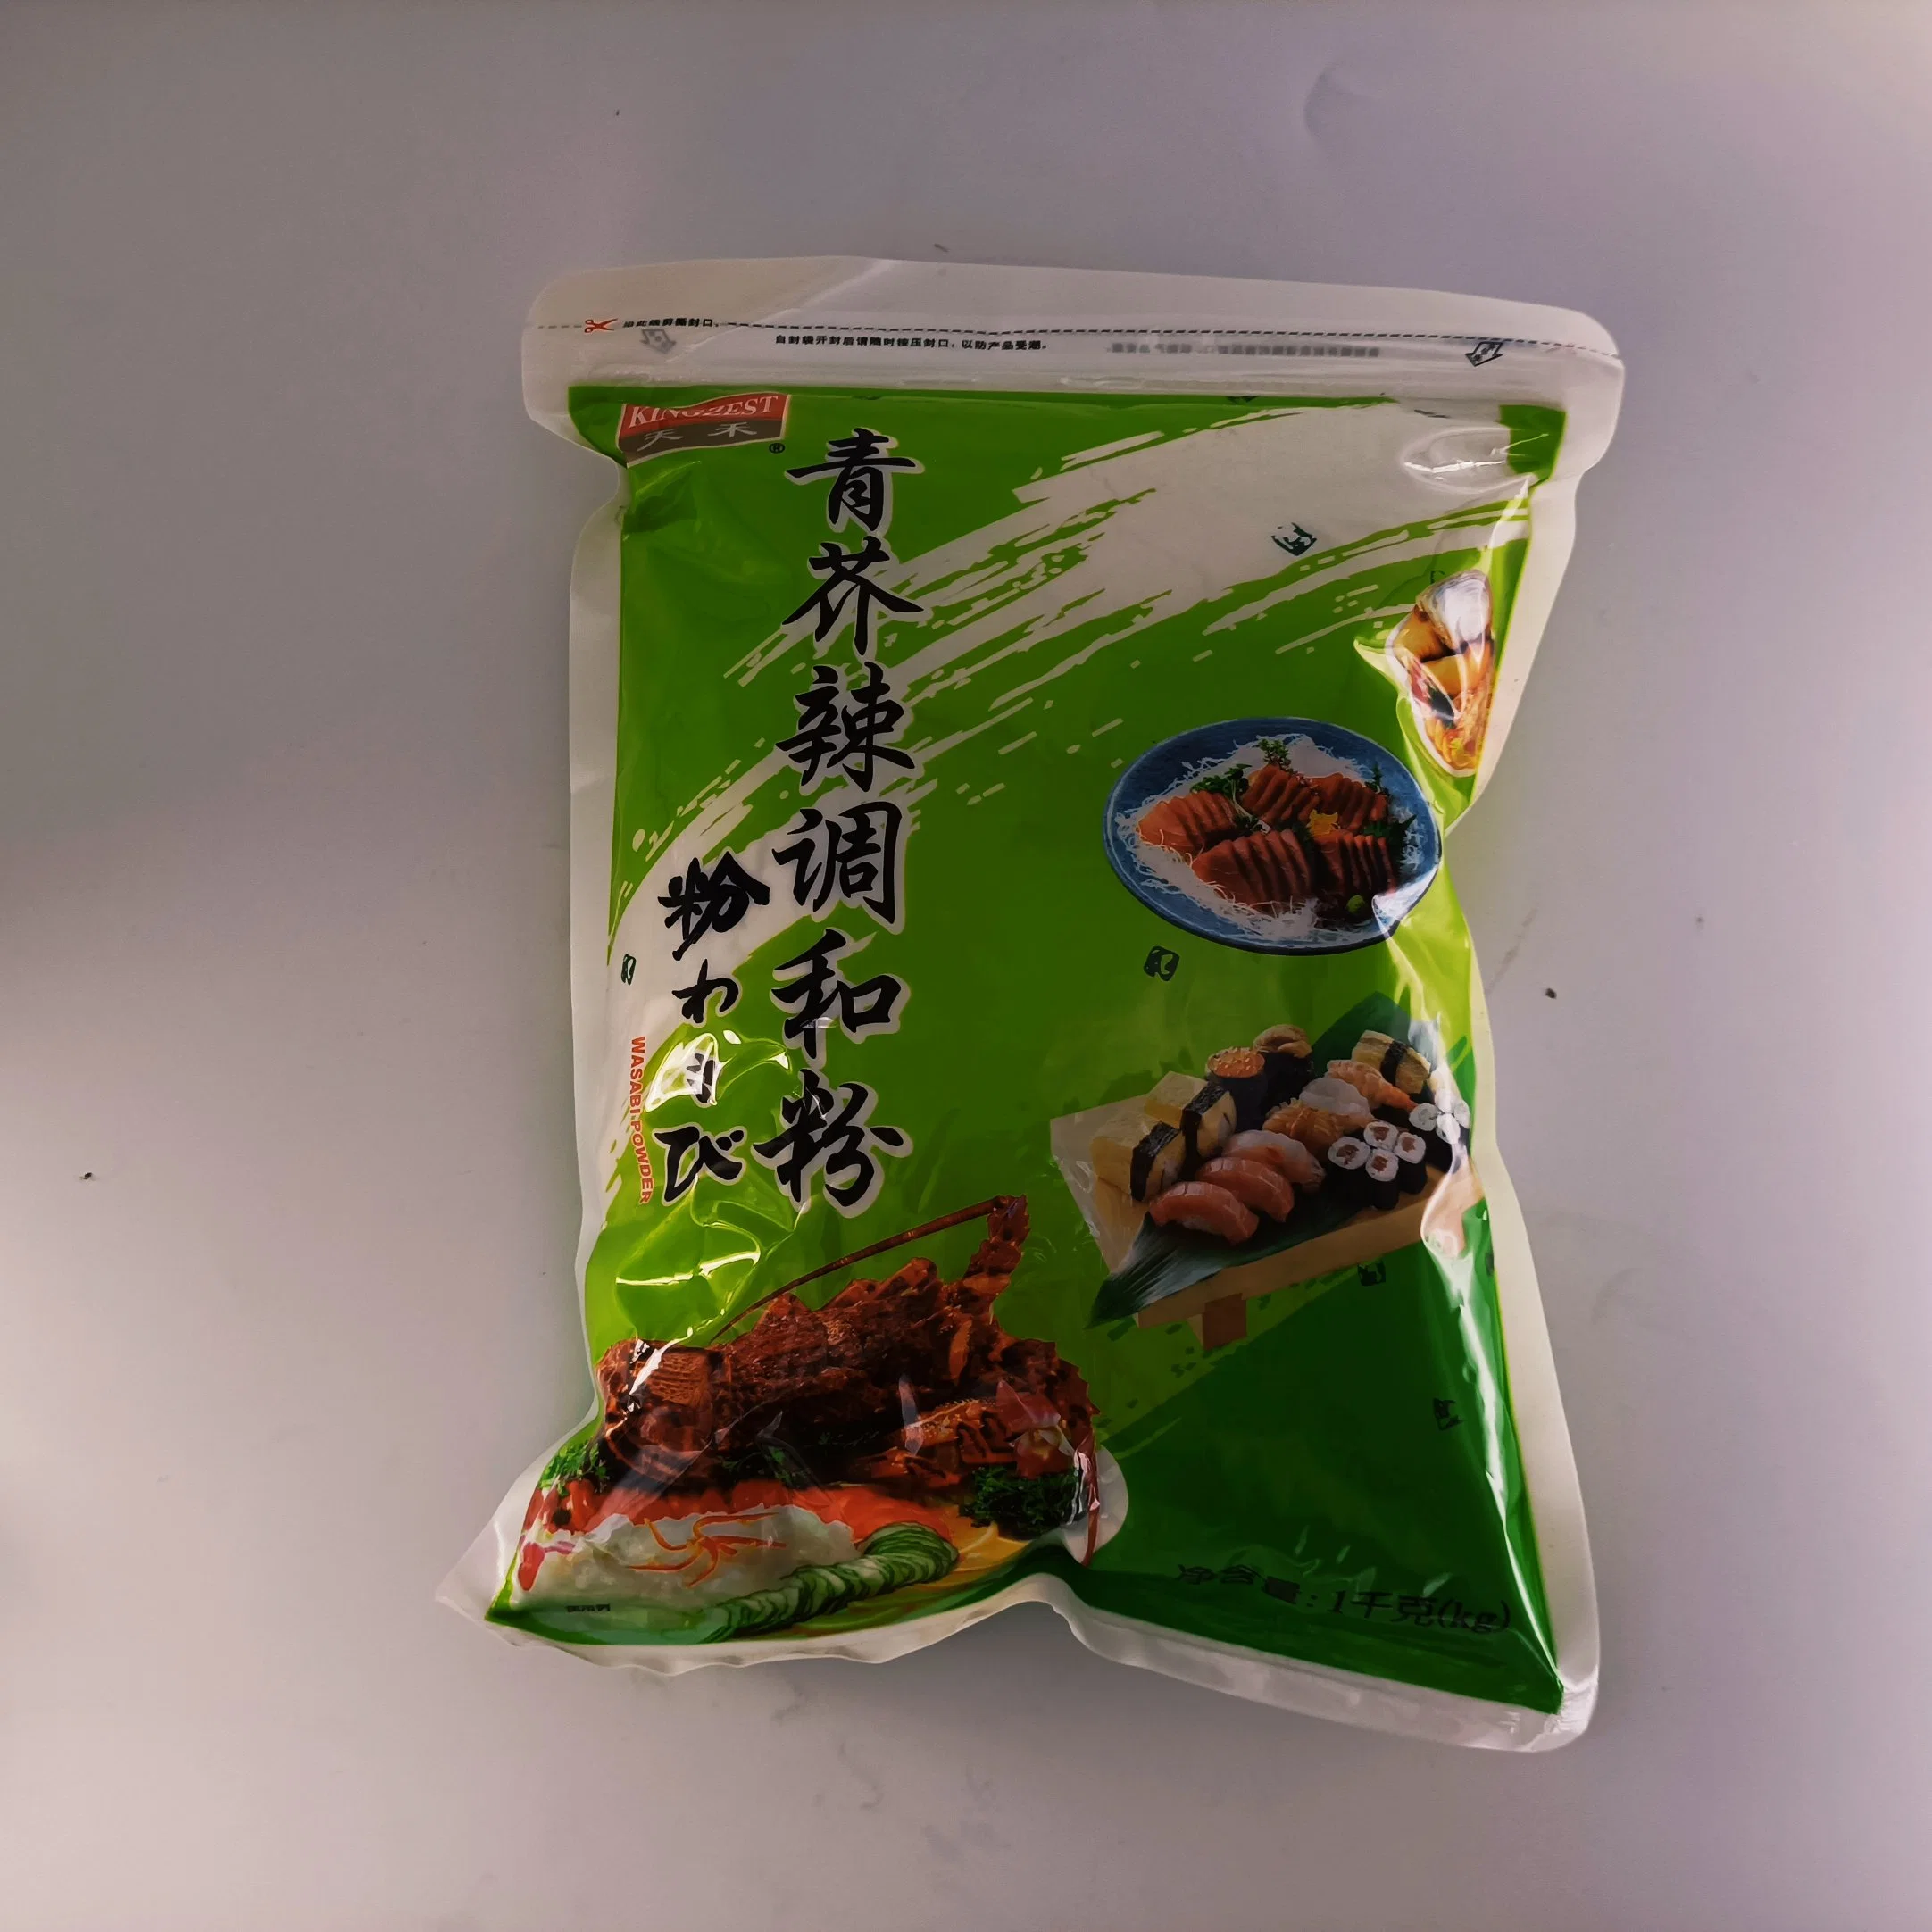 Wasabi Powder 1kg for Sushi Seasoning